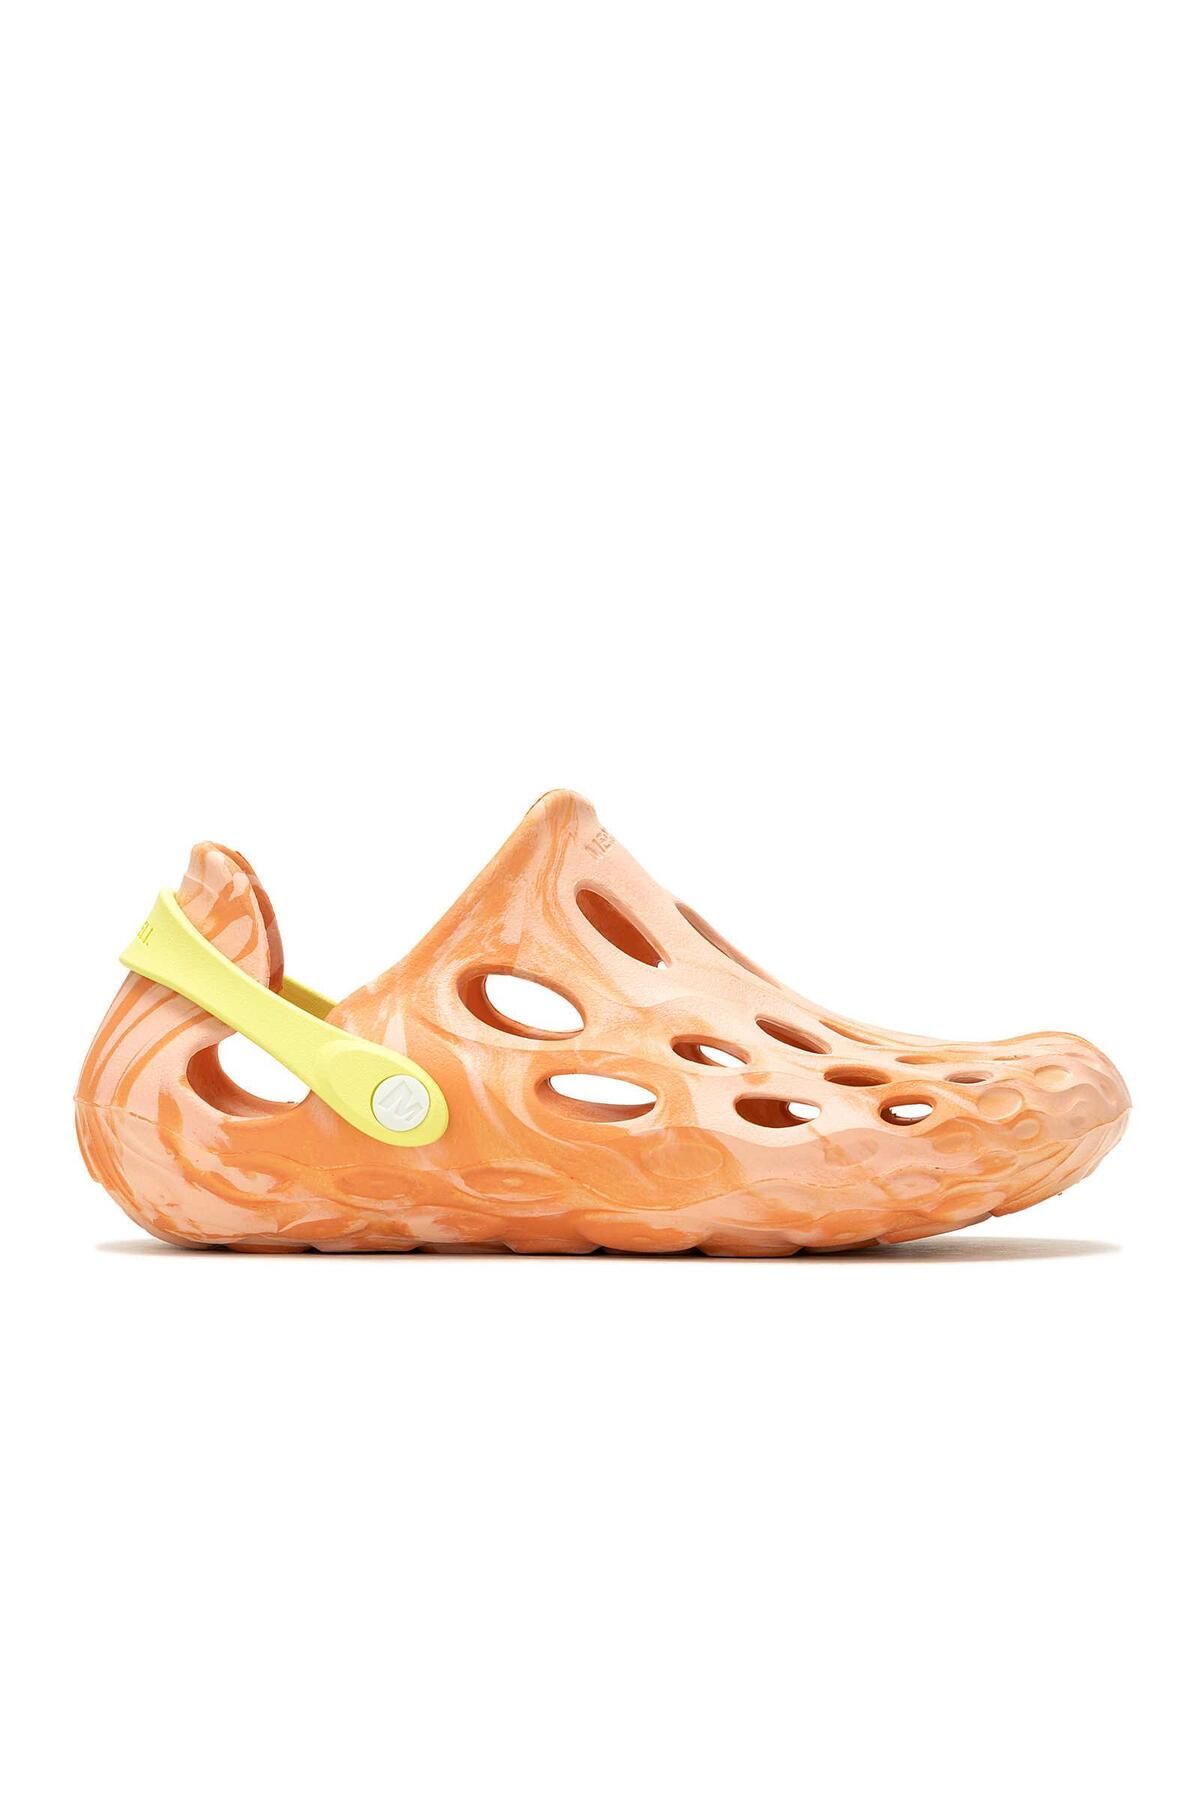 Merrell Hydro Moc Kadın Su Ayakkabısı-J006676